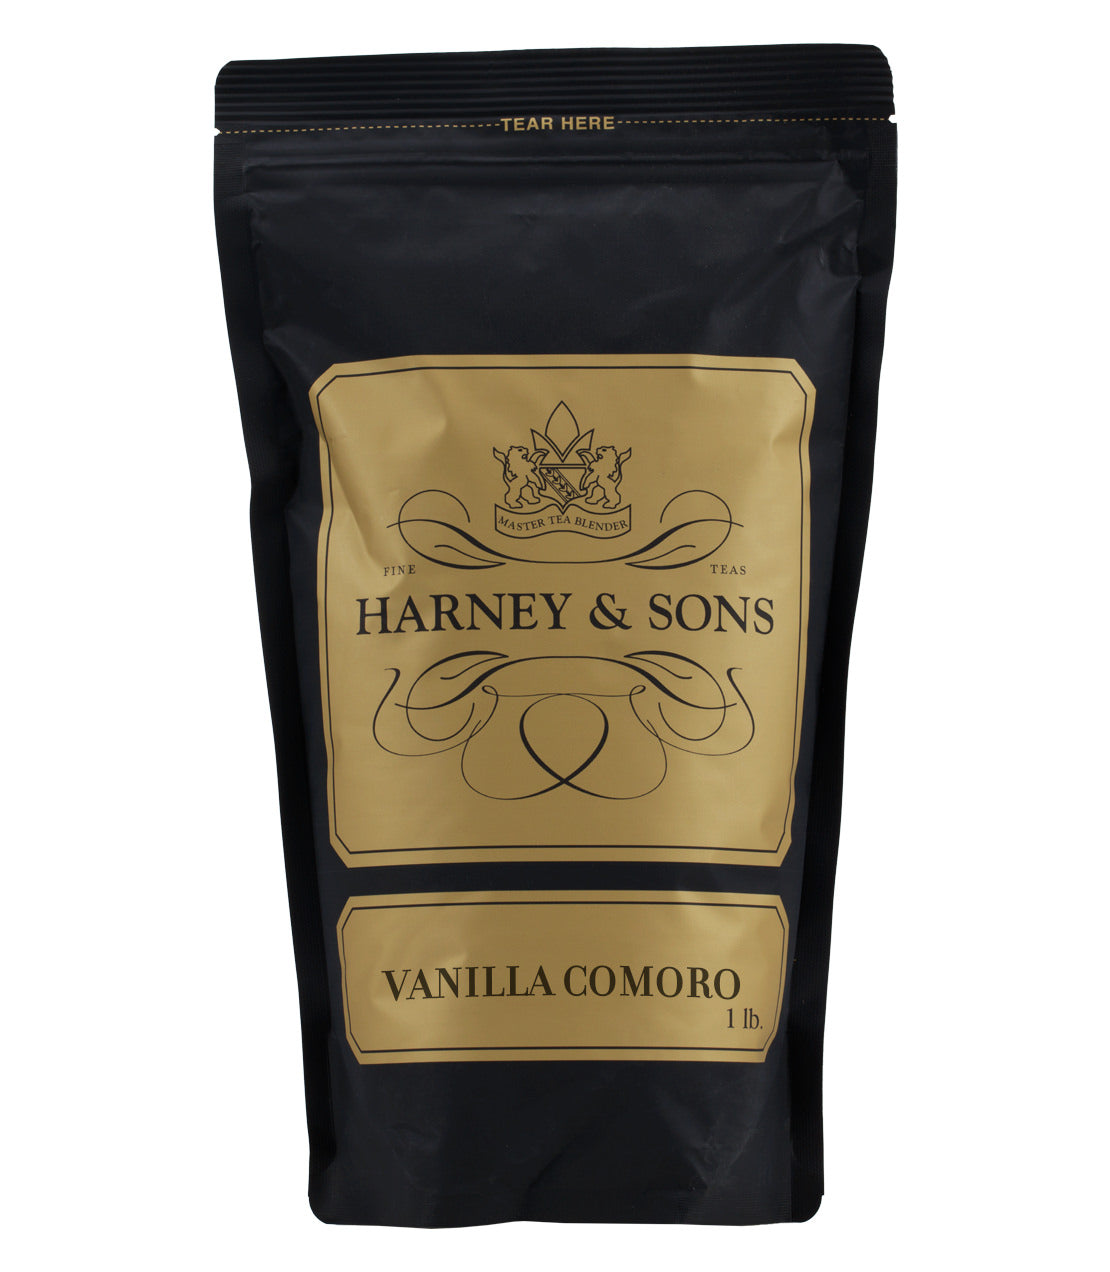 Decaf Vanilla Comoro - Loose 1 lb. Bag - Harney & Sons Fine Teas